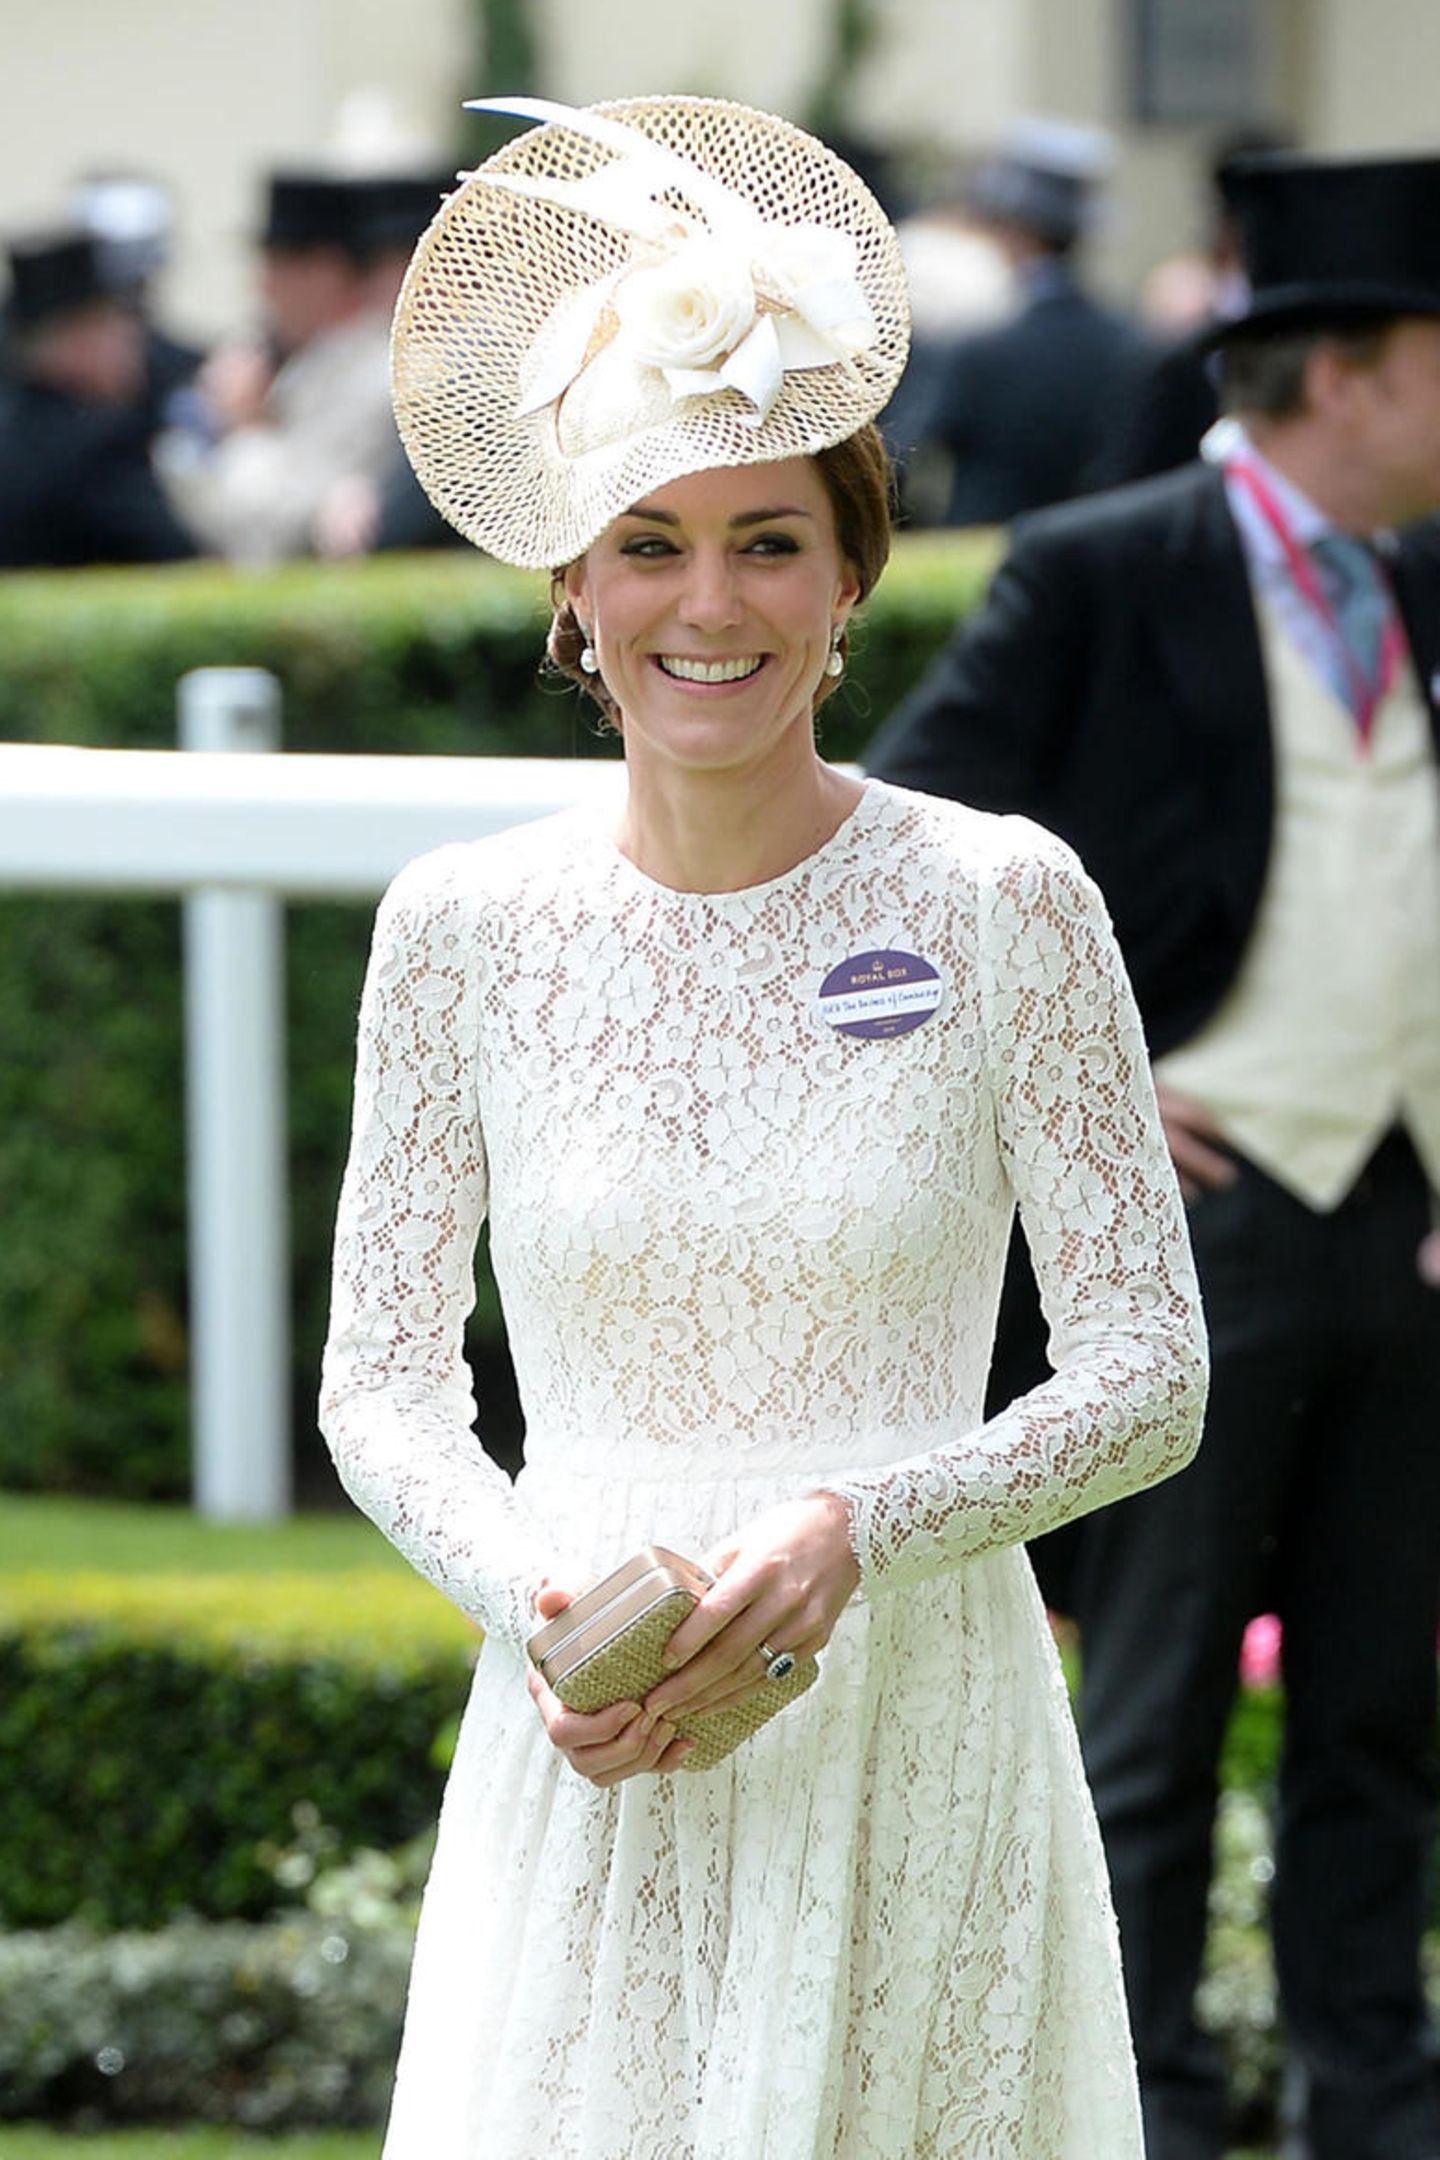 2016 feierte Herzogin Meghan ihr Ascot-Debüt in einem weißen Spitzen-Kleid. Haben sich Meghan und Kate etwa abgesprochen? Denn zumindest Catherine scheint für das royale Pferderennen einen ganz bestimmten Look bzw. Farbe zu bevorzugen. 